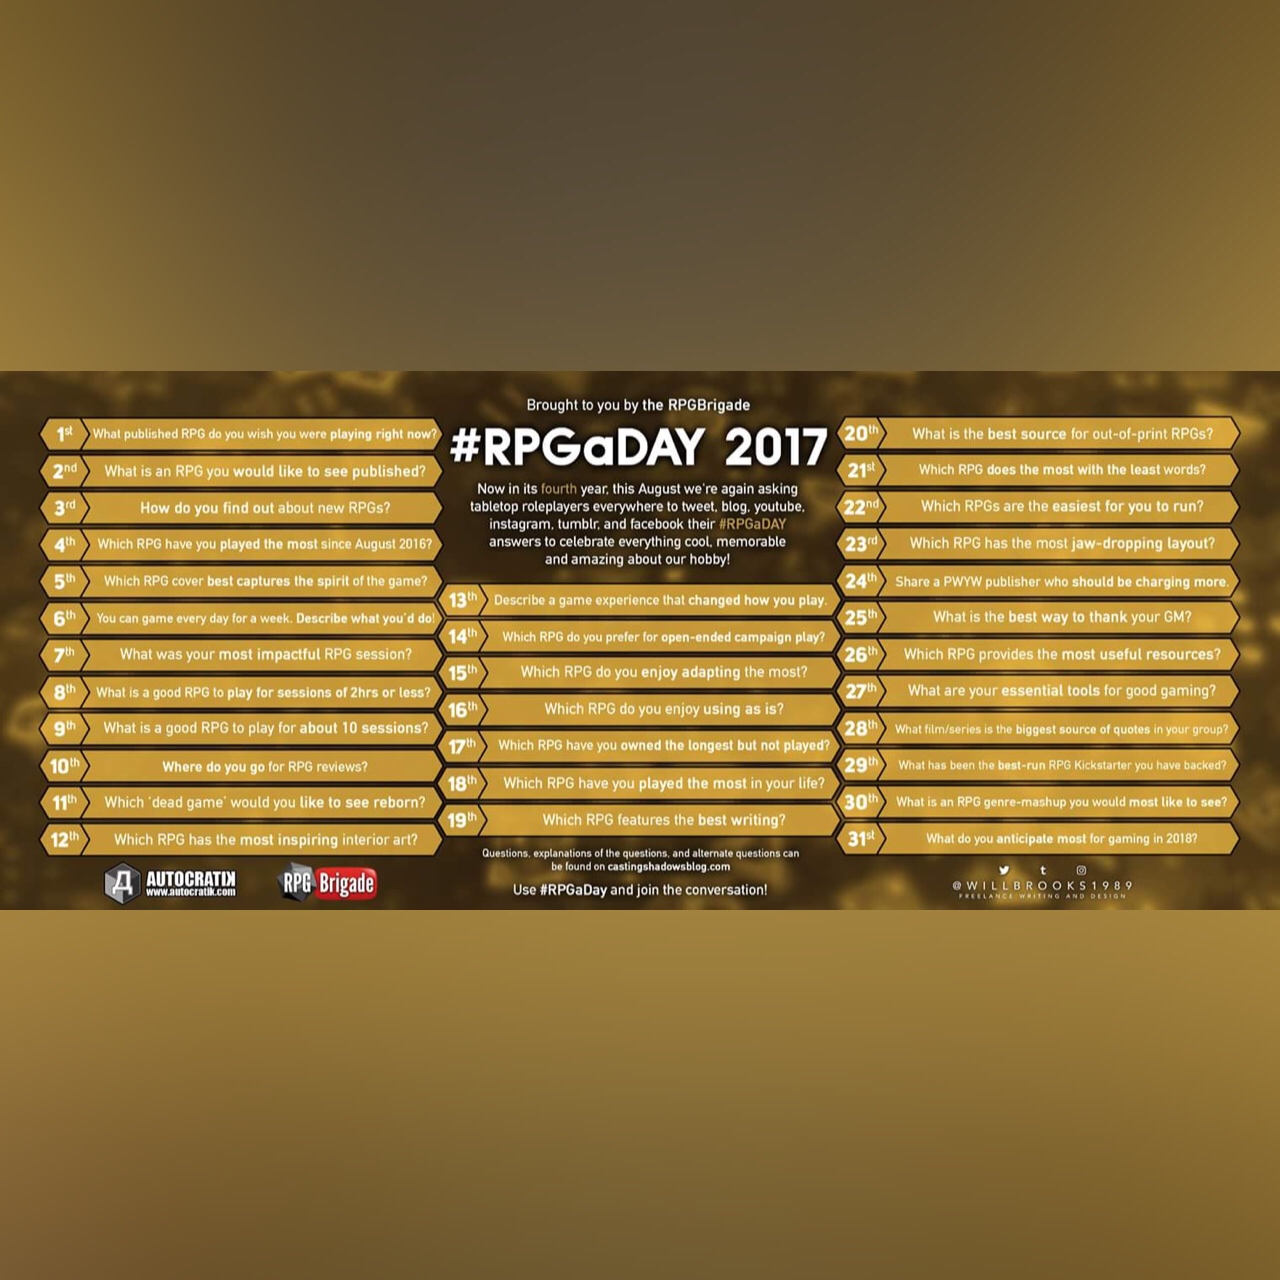 RPGaDAY 2017 August 10th Where do you go for RPG reviews?